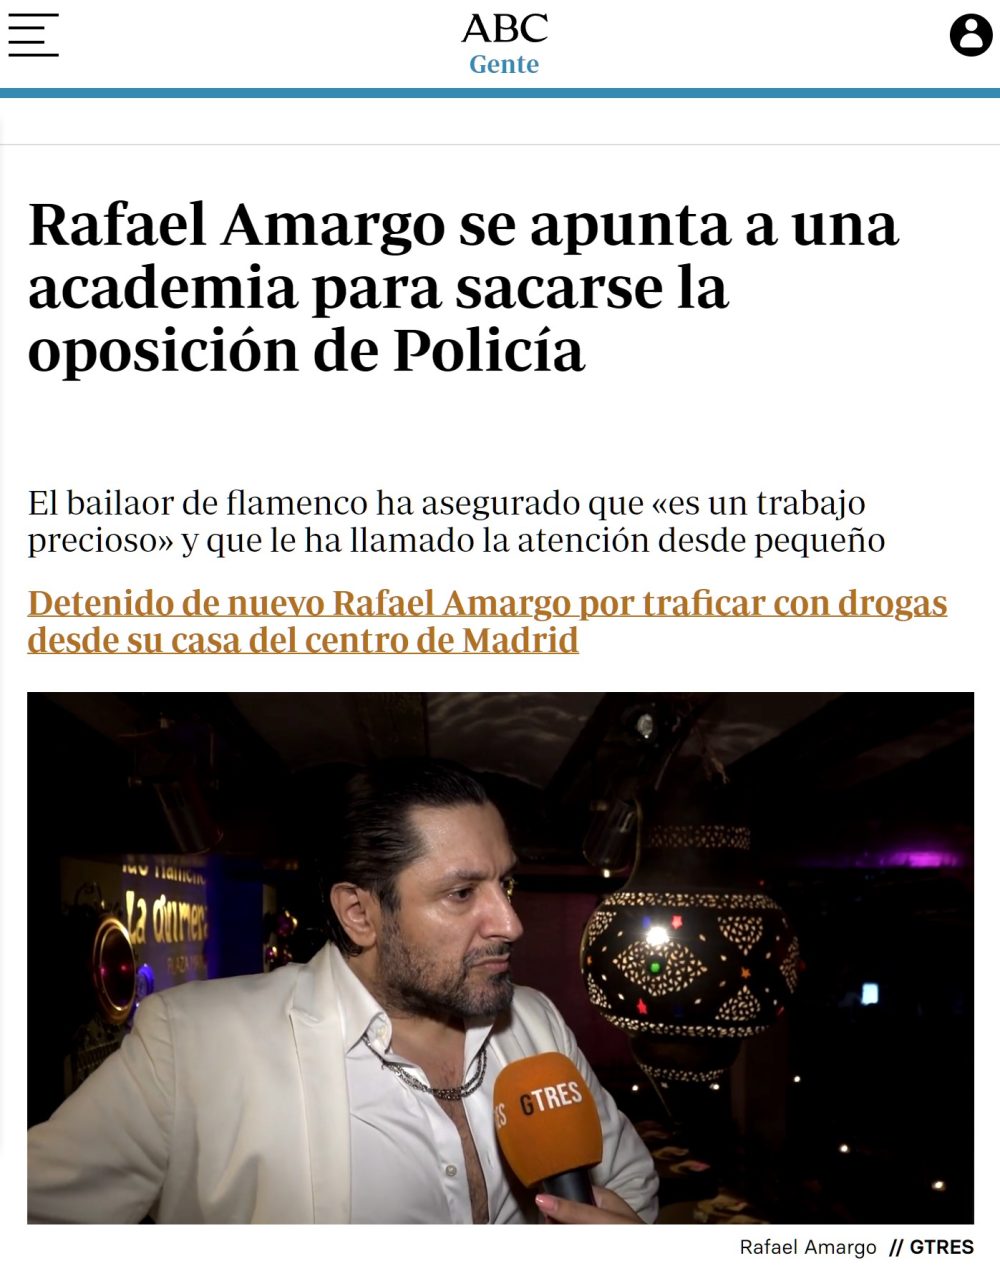 Rafael Amargo se apunta a una academia para sacarse la opo de Policía